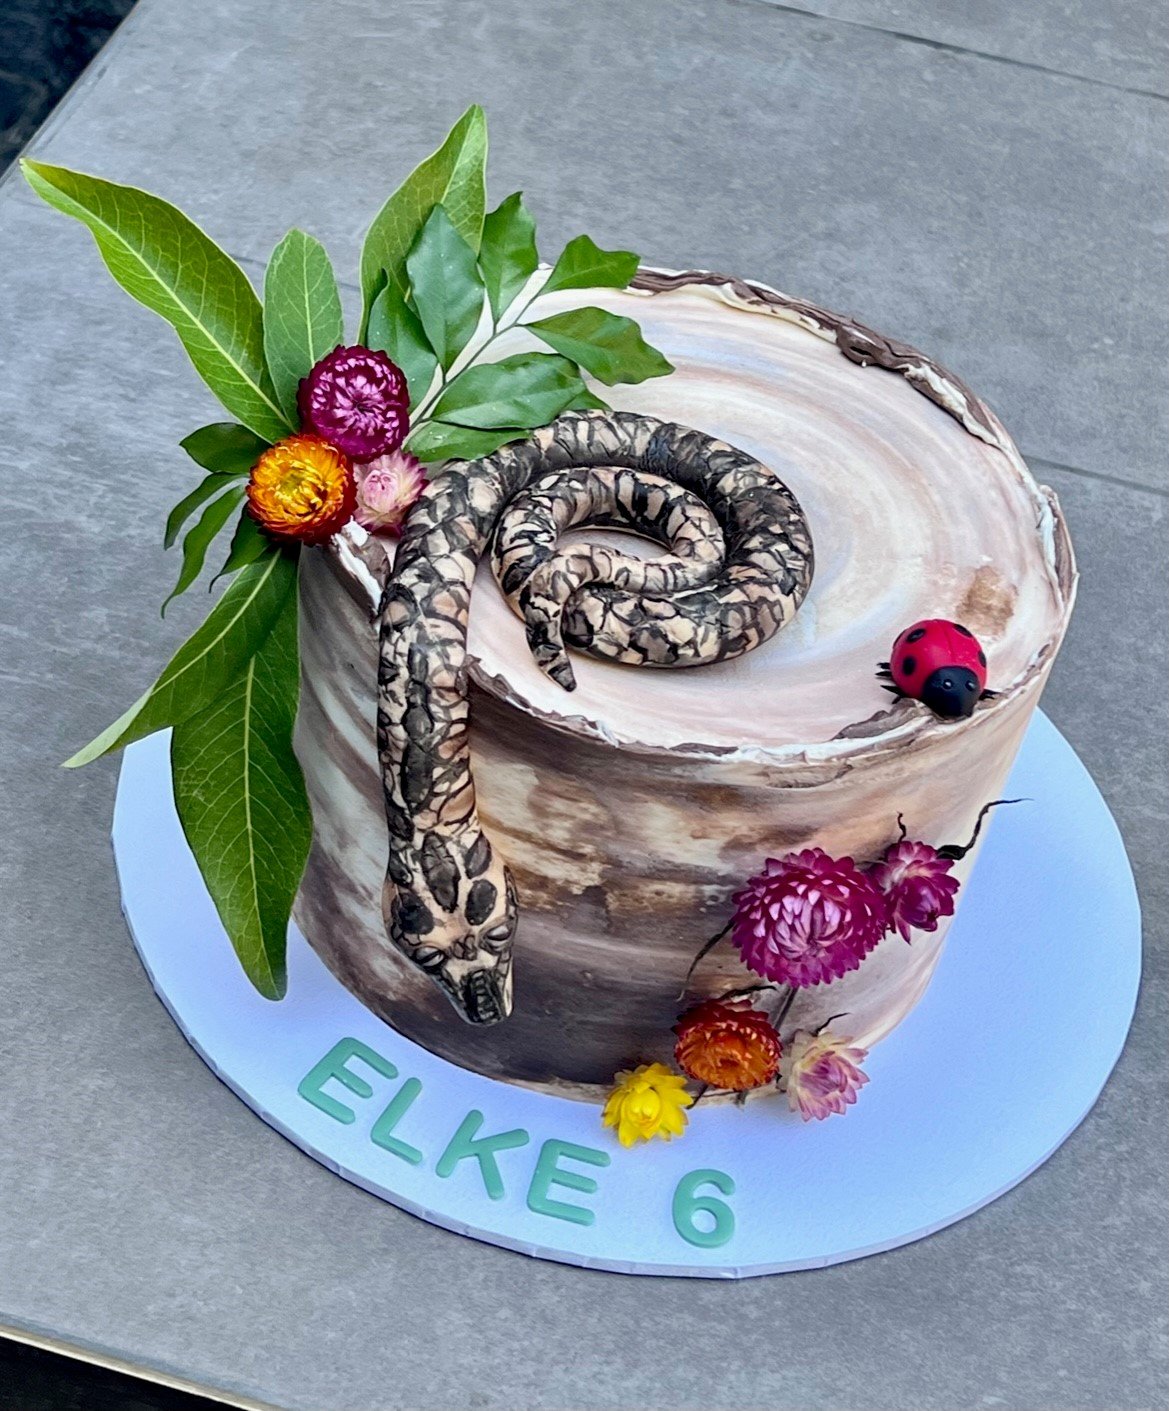 vanillapodspecialtycakes-8thbirthday-brisbanecakes-buttercreamcake-pythoncake-python-snakecake-reptileparty-snakeparty.jpg